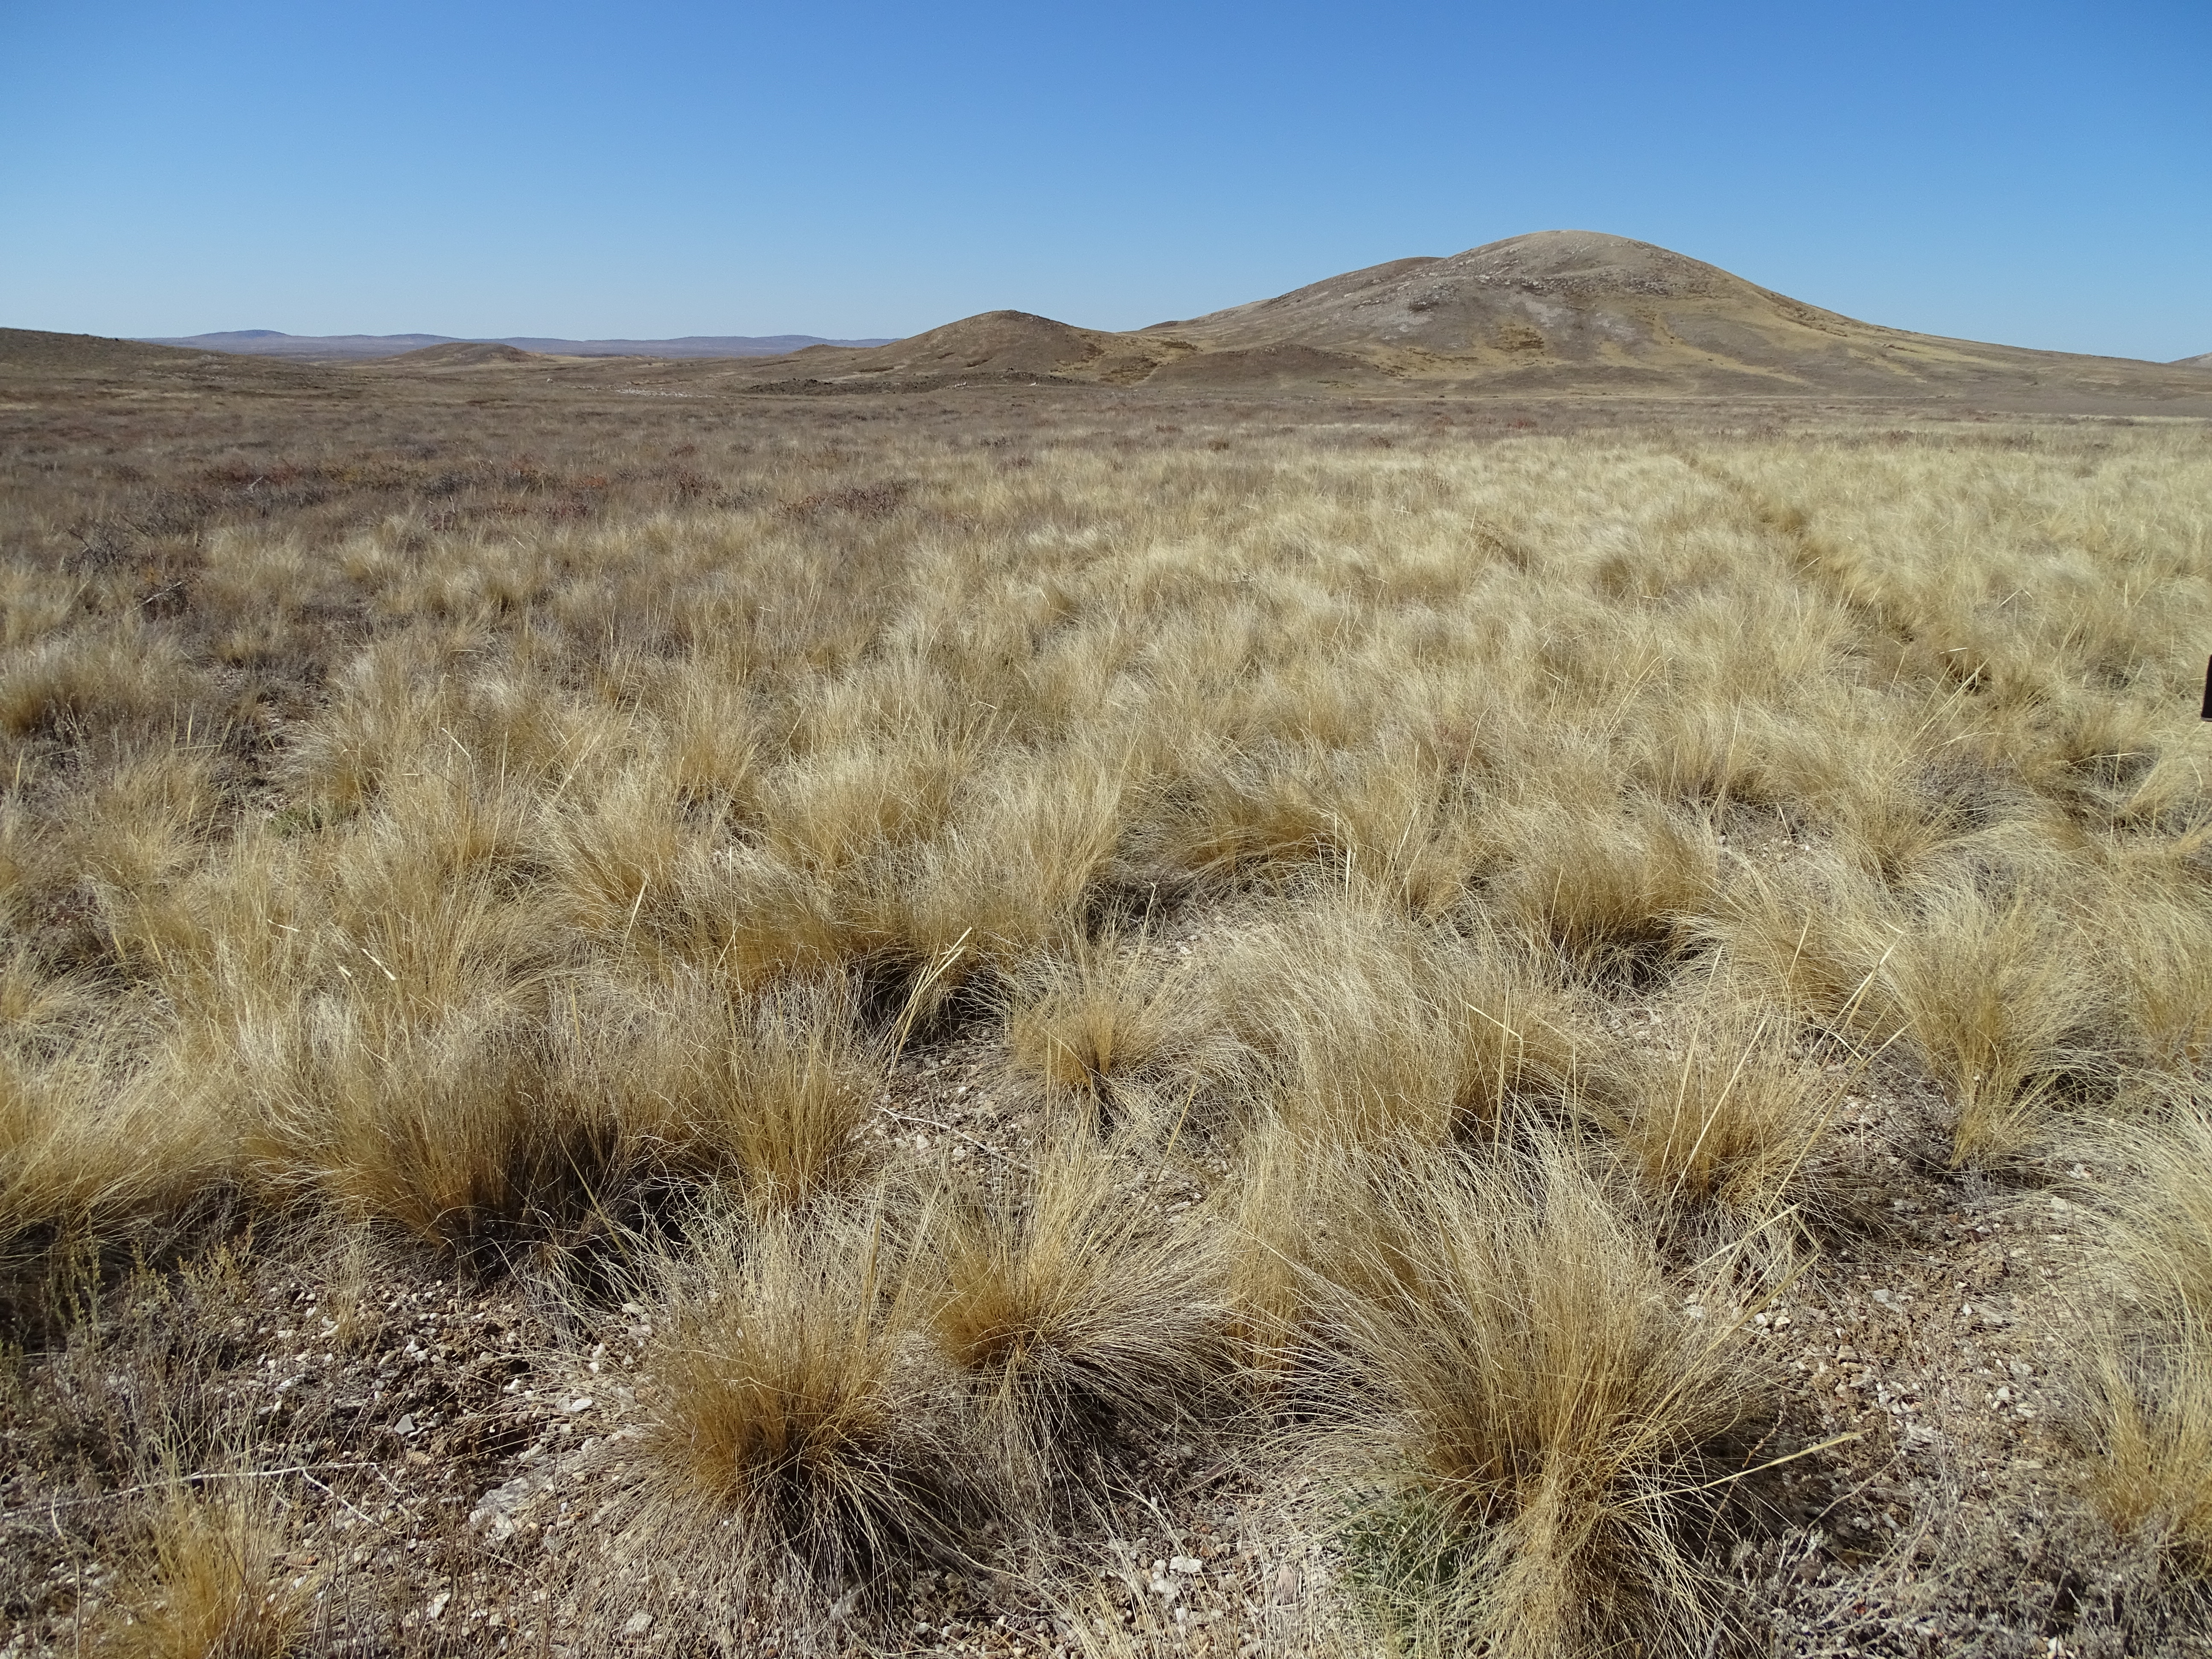 Desert steppe in Kazakhstan, I. Smelansky